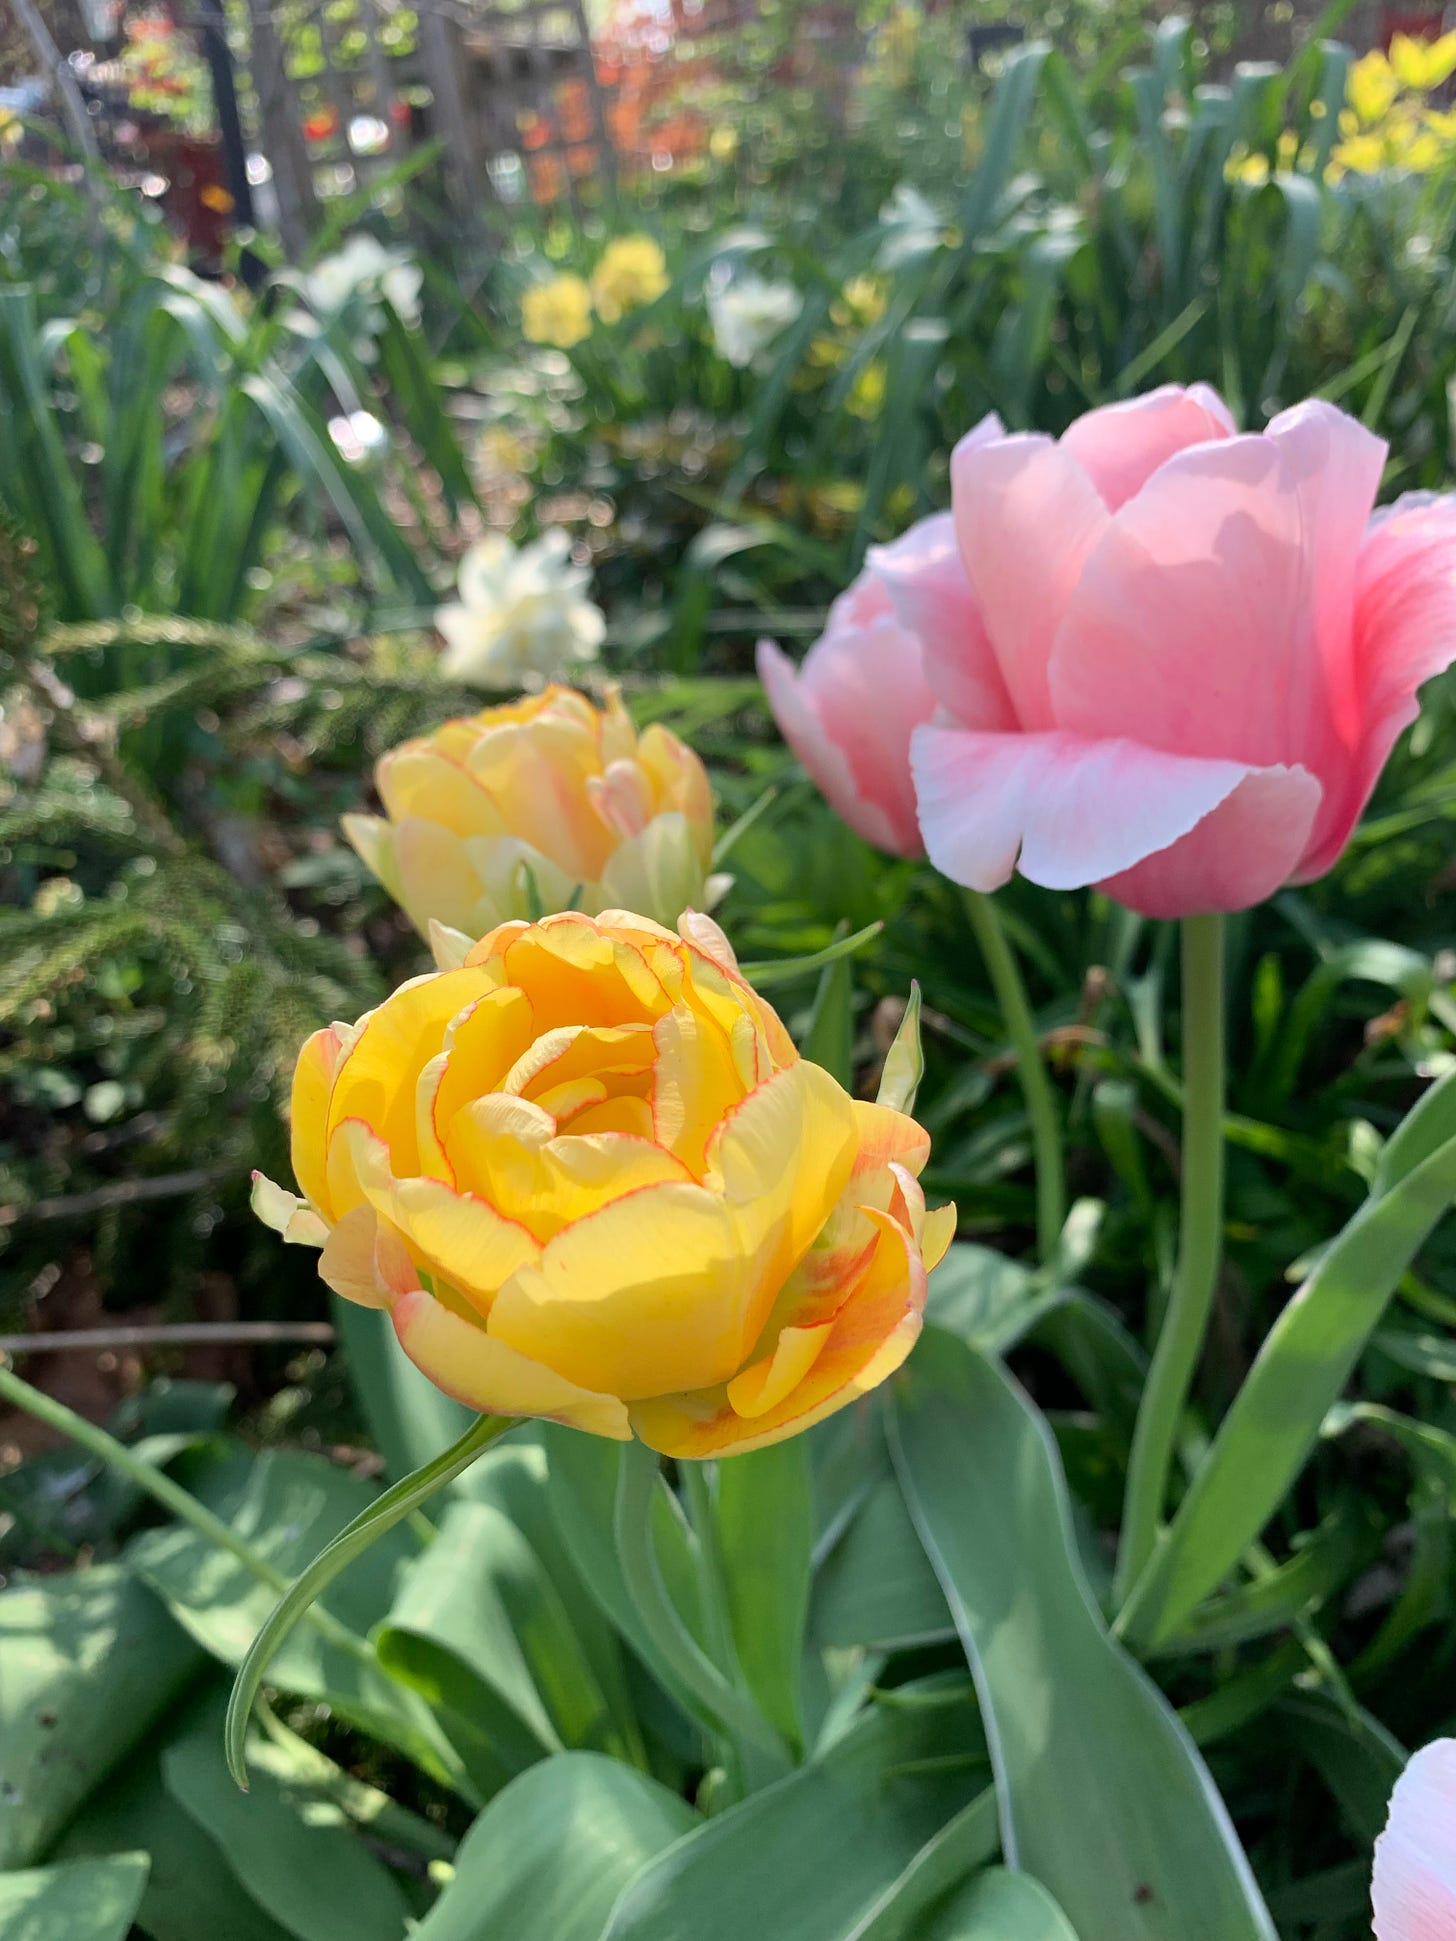 Many-petaled tulips